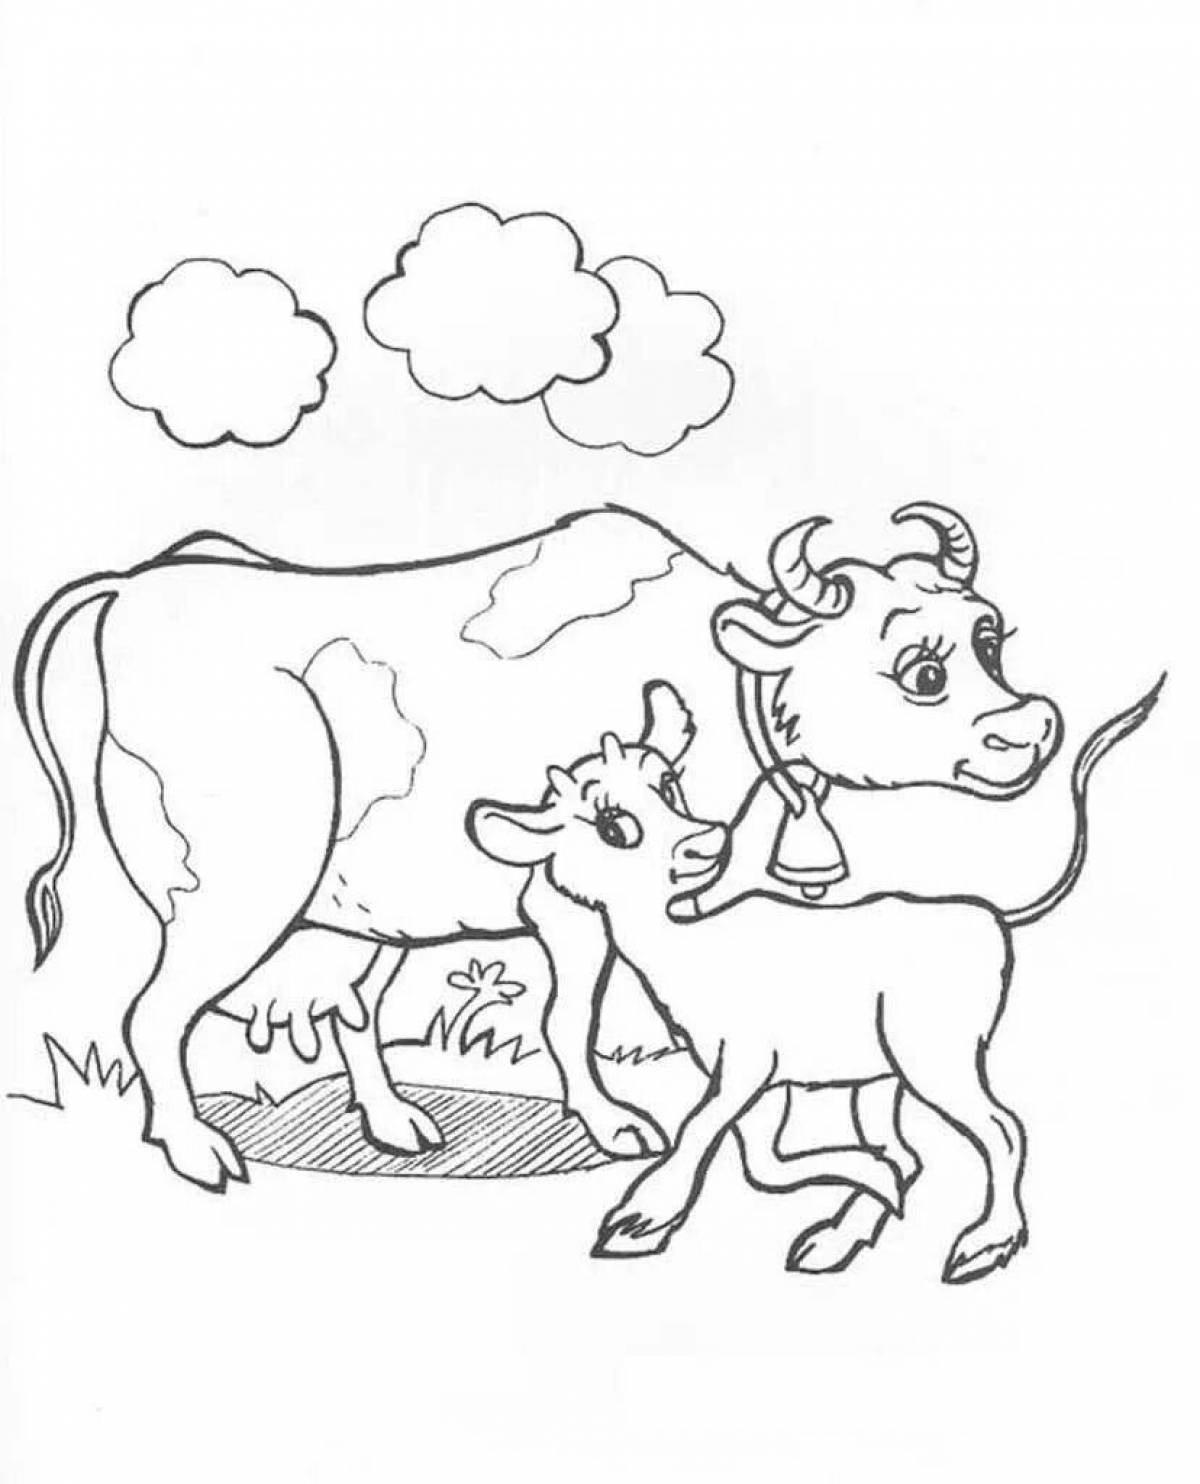 Креативная раскраска теленка для детей